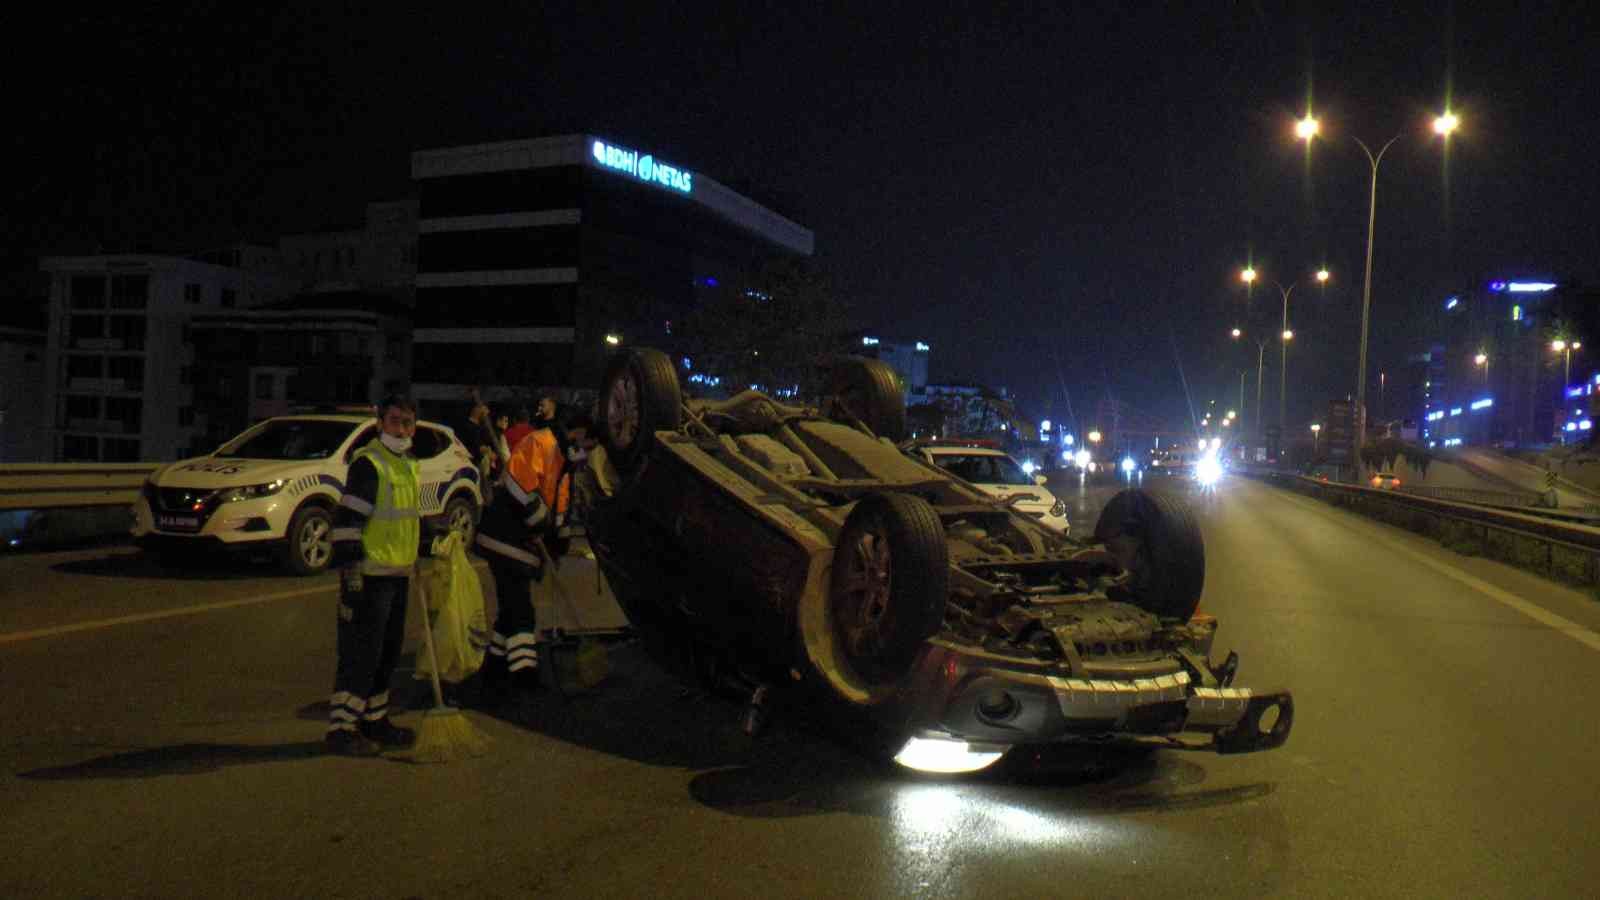 Maltepe’de makas atarak ilerleyen sürücü kazaya neden oldu: 3 yaralı #istanbul